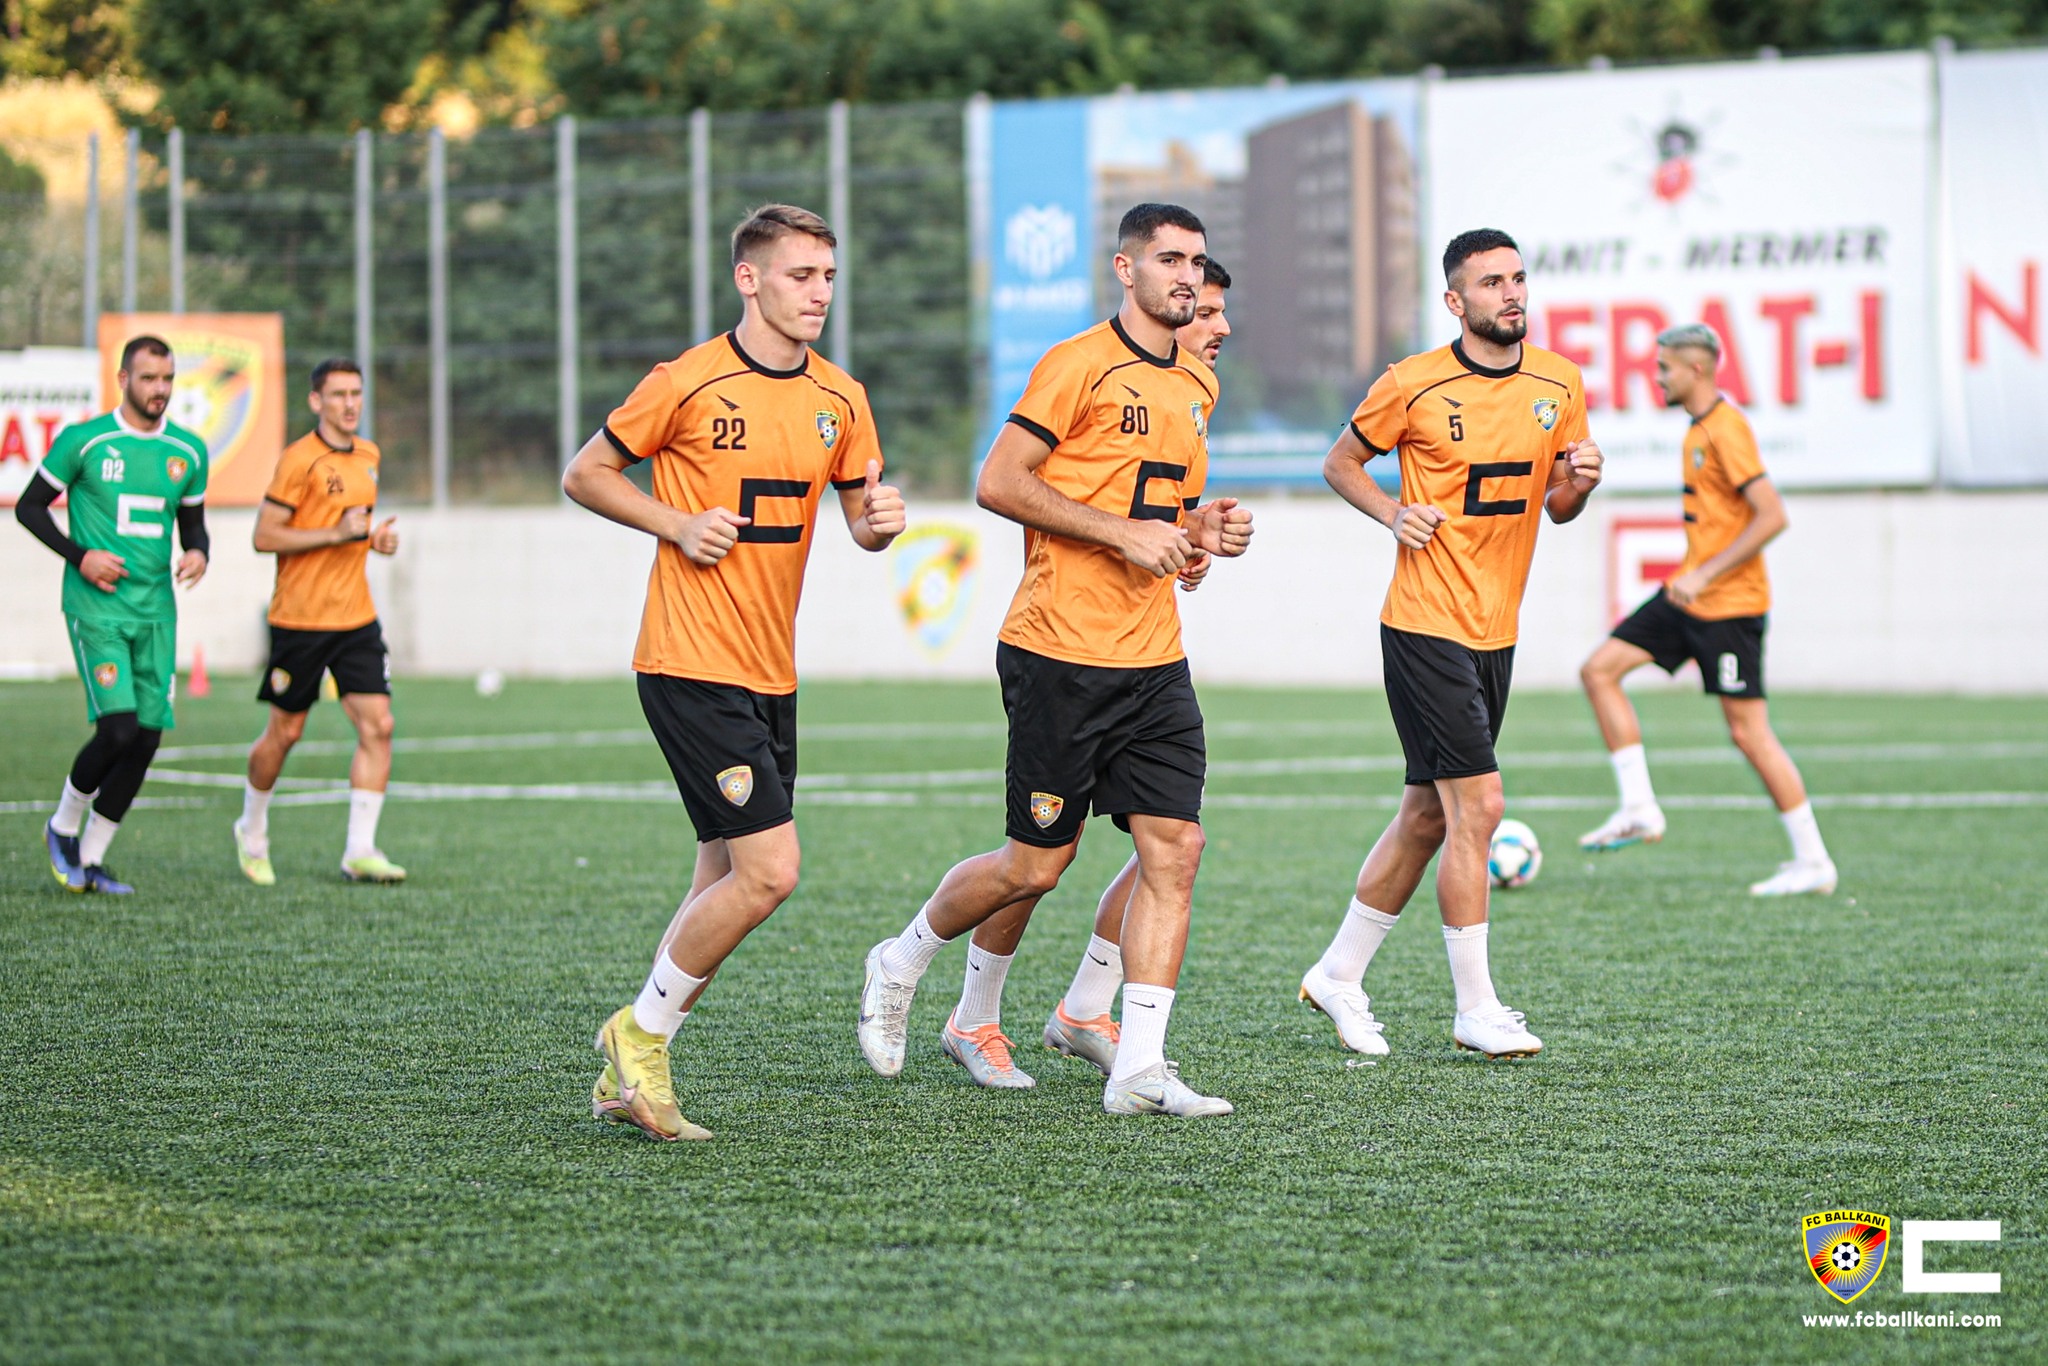 Sot Lincoln-Ballkani, kampioni i Kosovës synon kalimin në play-off